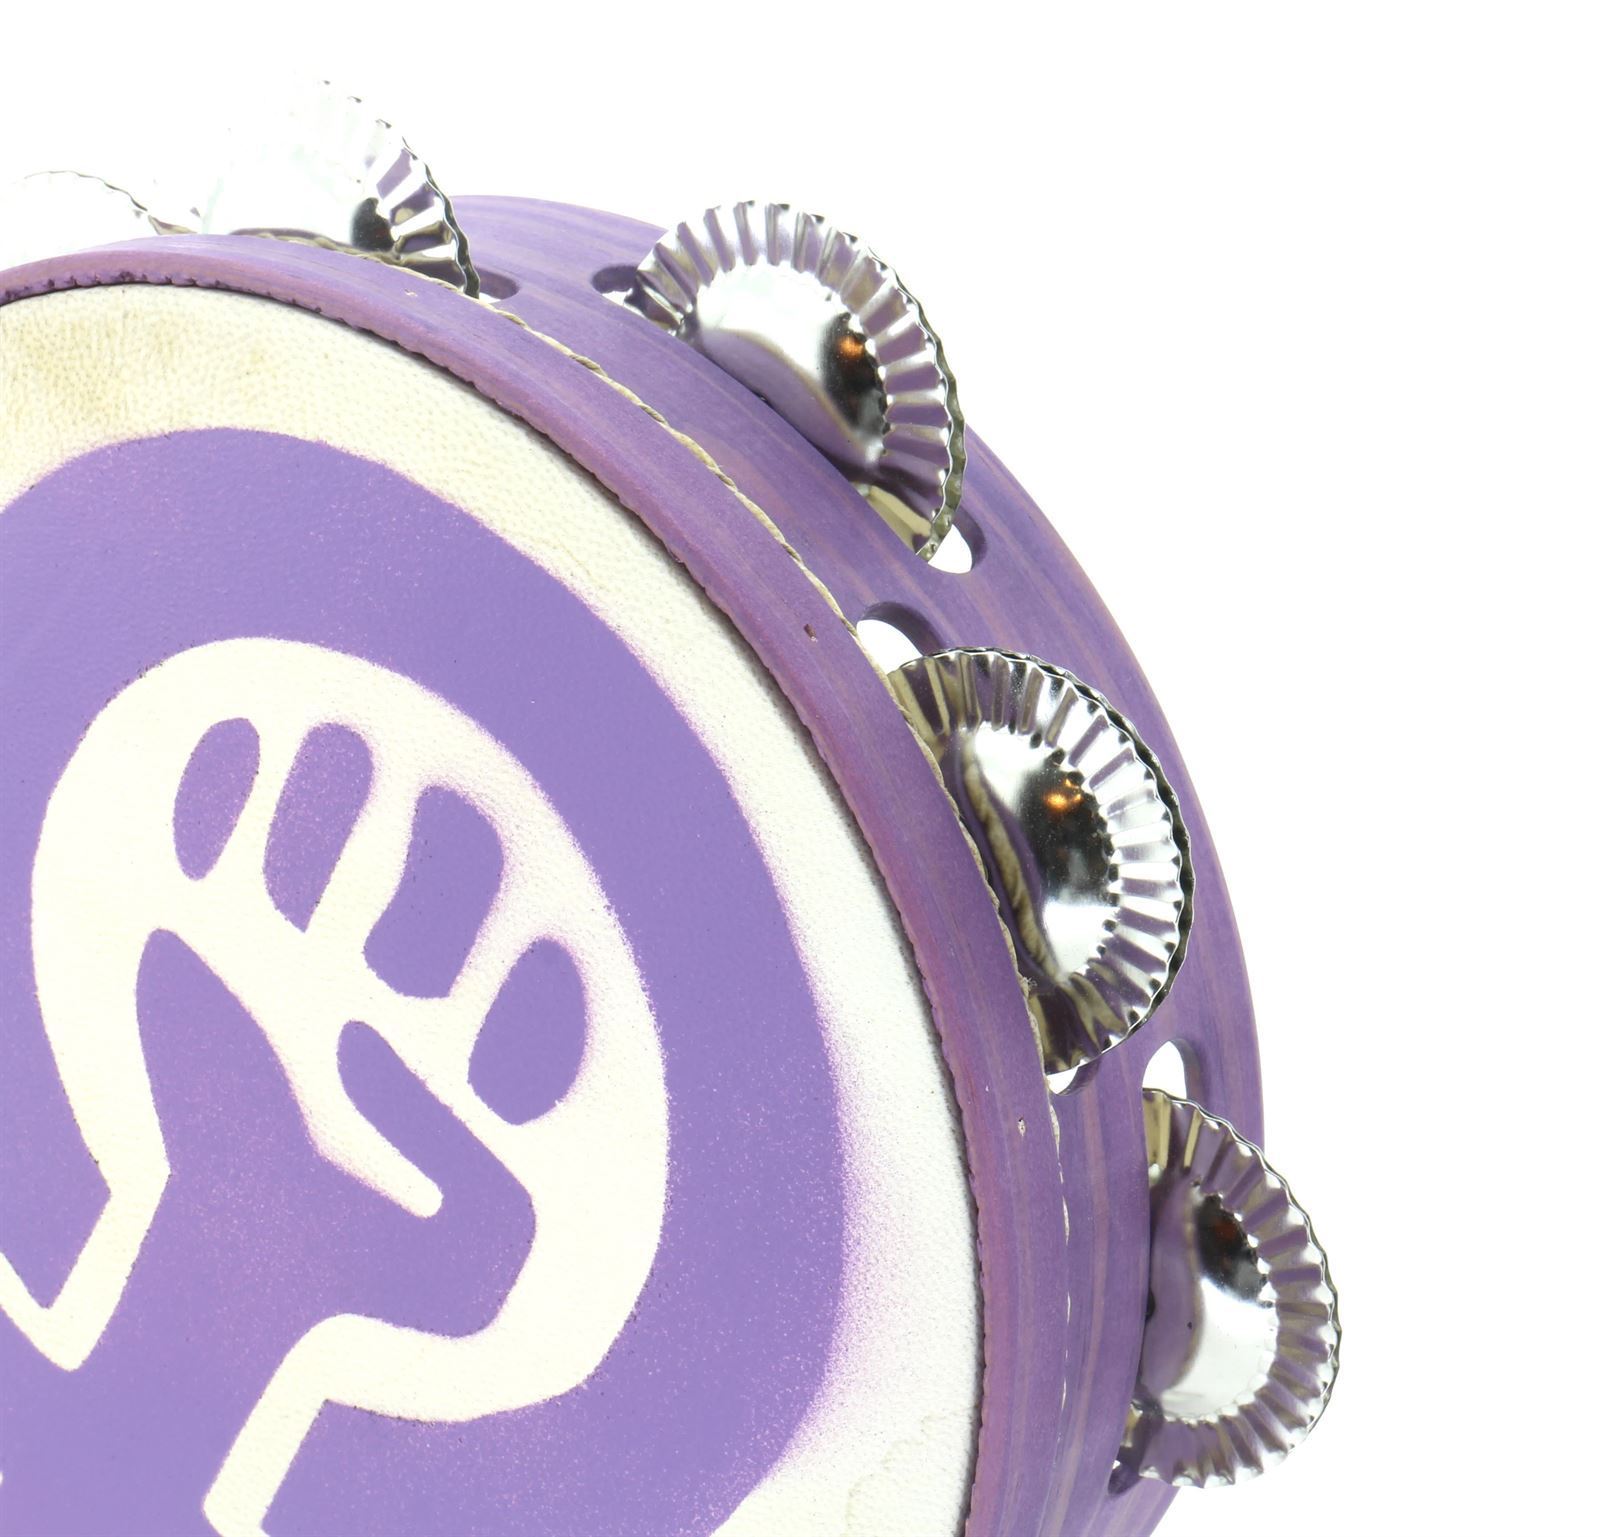 Pandeireta violeta 9 pares con ilustración do símbolo feminista - Imaxe 1